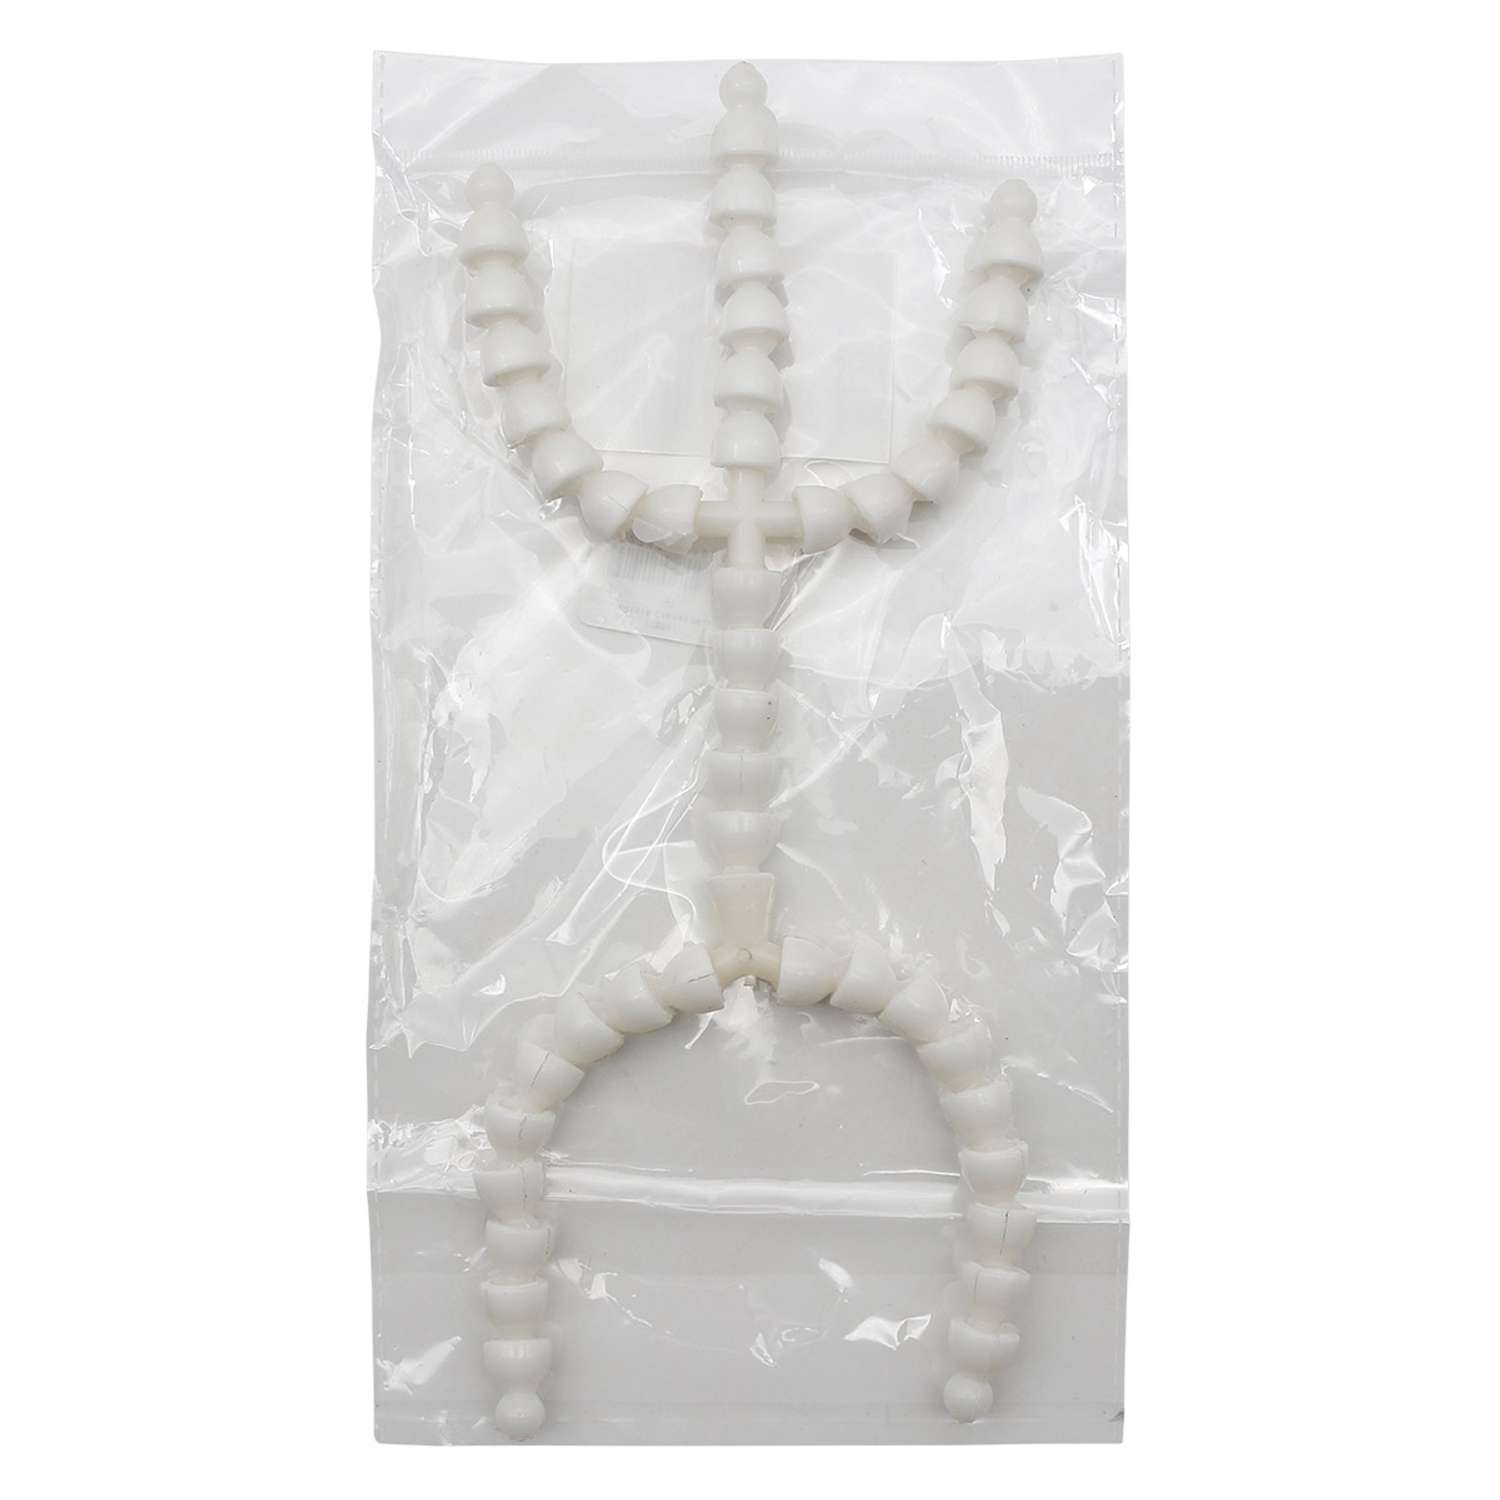 Скелет - каркас для игрушки Айрис готовый гибкий пластиковый Lock - line 26 см - фото 2